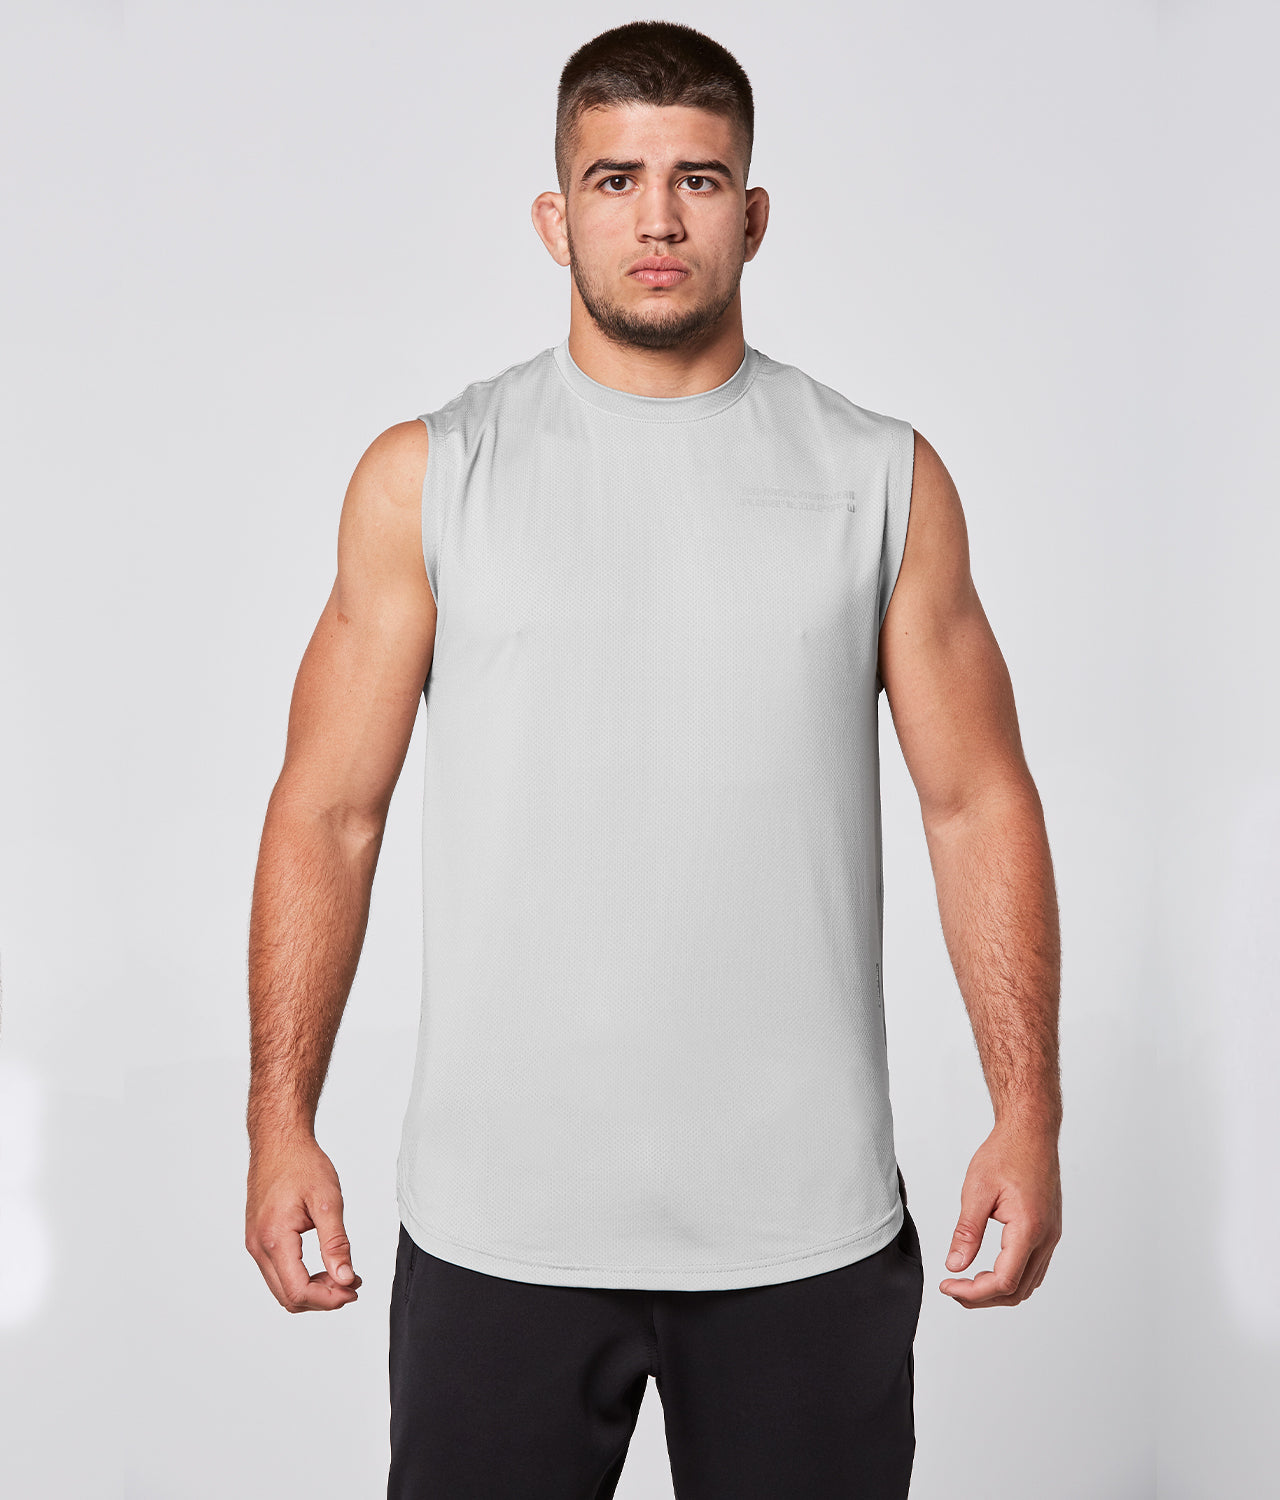 Sleeveless Athletic Gym Workout Shirts For Men & Women - Born Tough – Elite  Sports